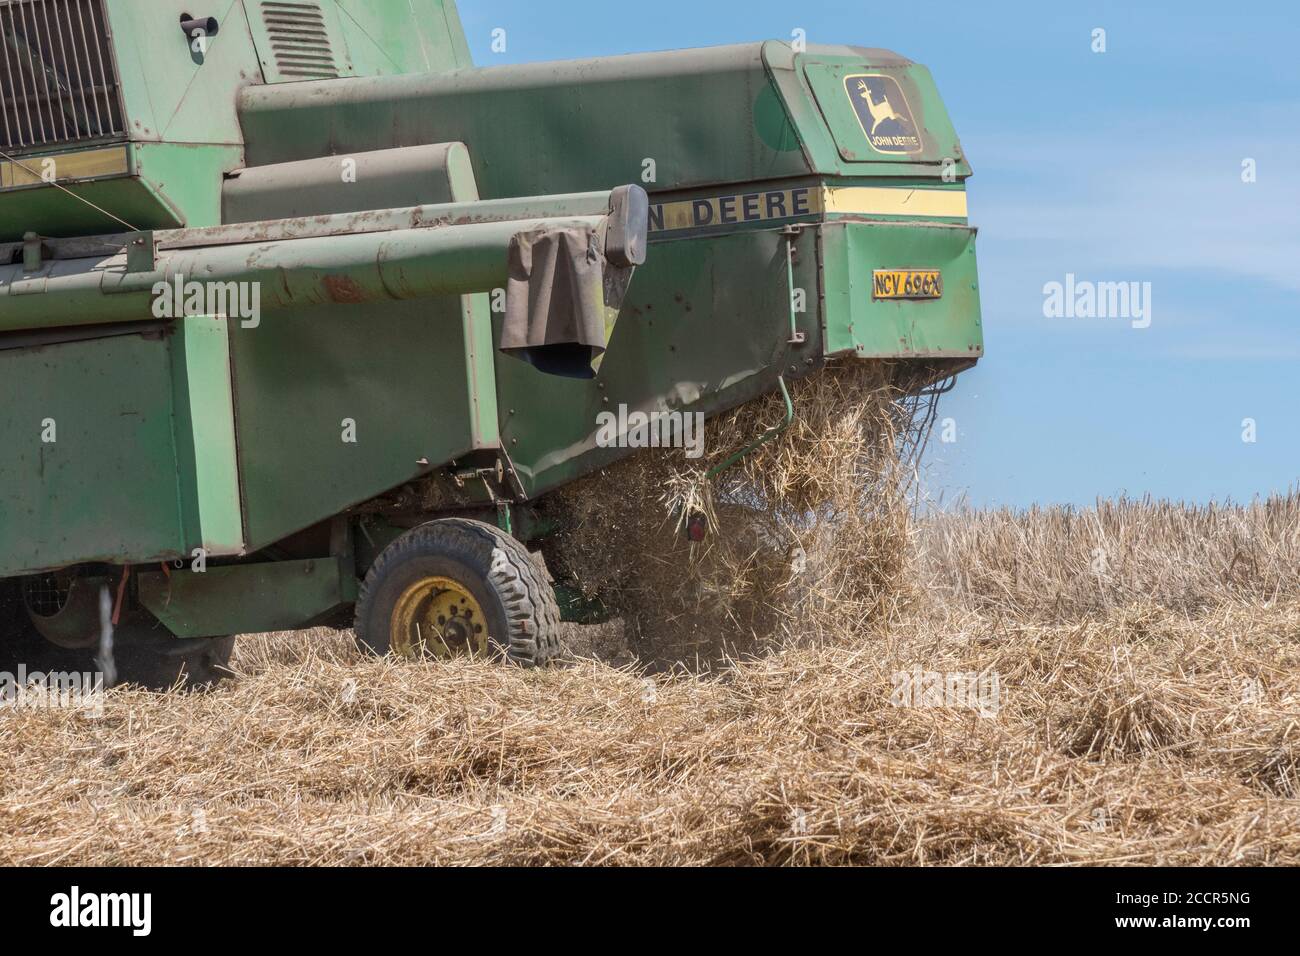 Arrière de la moissonneuse-batteuse John Deere coupant la récolte de blé. Trémie à grain, tuyau latéral et secoueurs visibles. Pour la récolte de blé du Royaume-Uni 2020. Banque D'Images